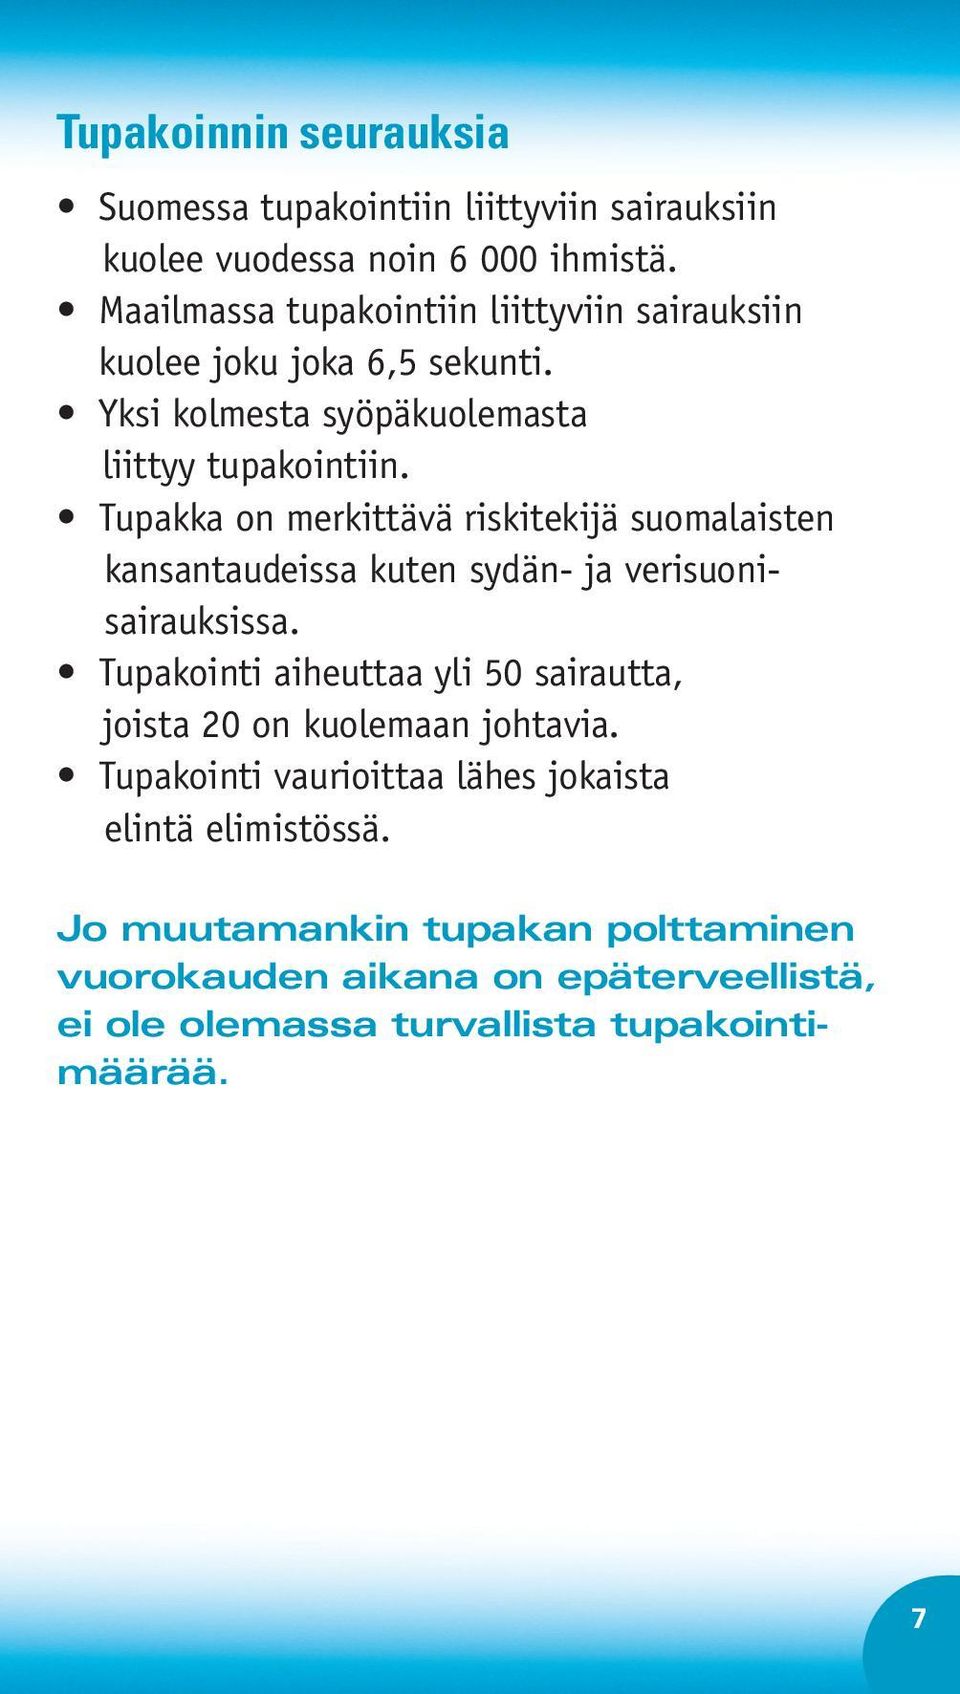 Tupakka on merkittävä riskitekijä suomalaisten kansantaudeissa kuten sydän- ja verisuonisairauksissa.